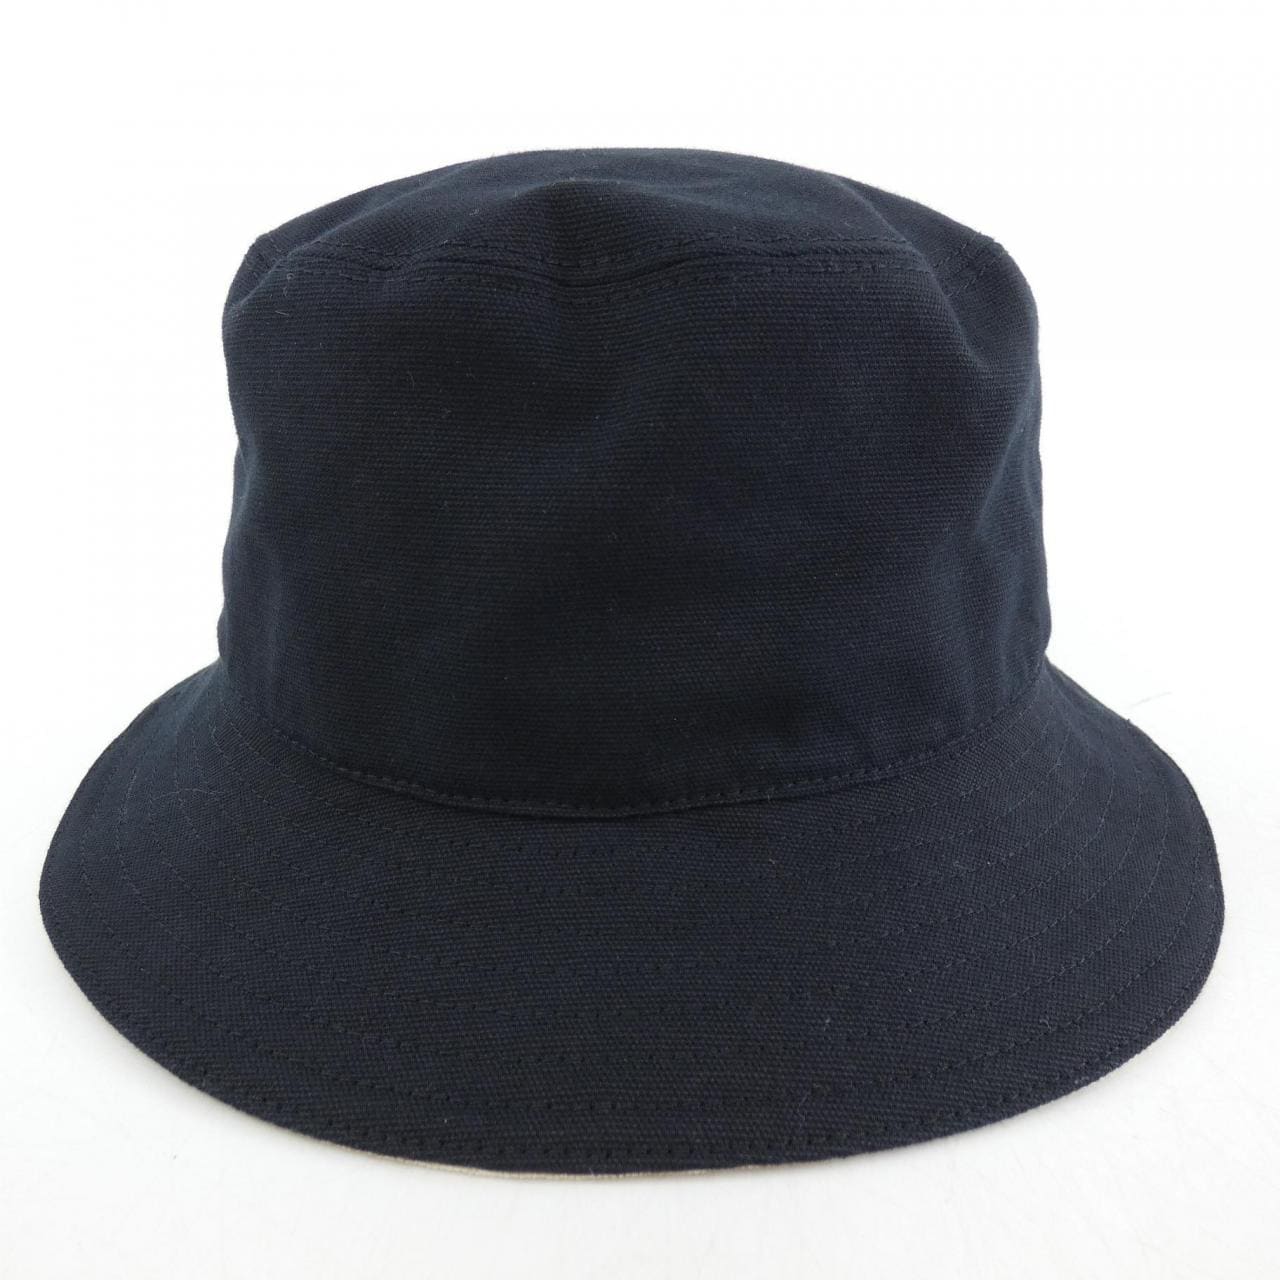 DIOR DIOR Hat